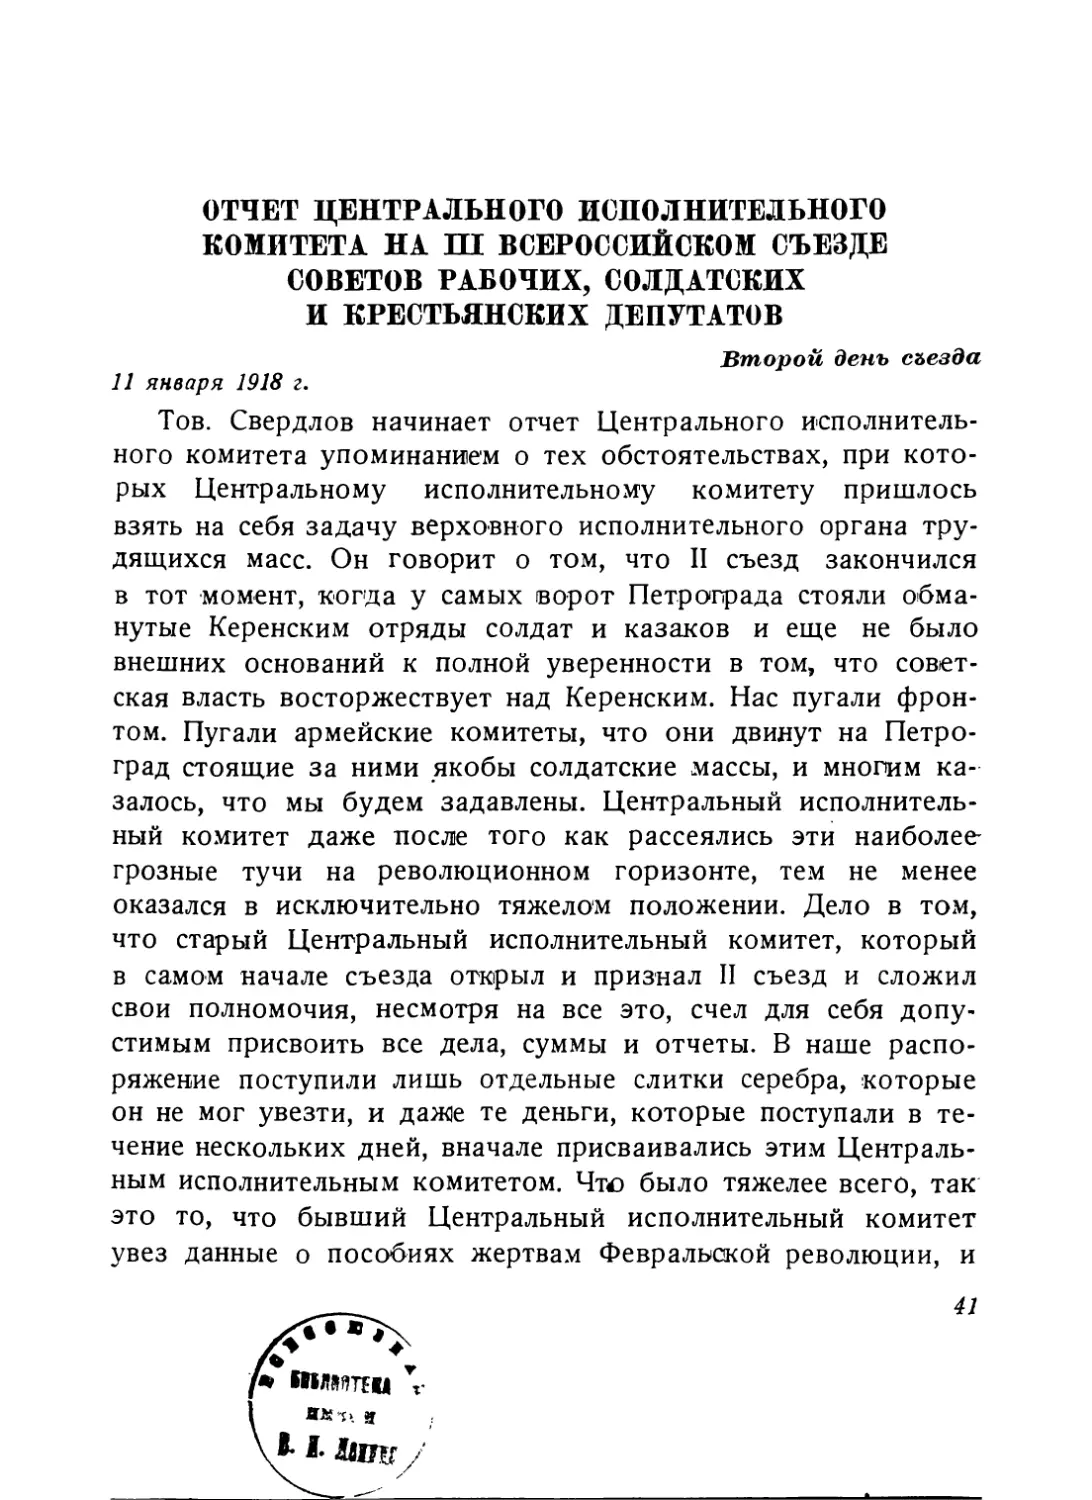 Отчет Центрального исполнительного комитета на III Всероссийском съезде Советов рабочих, солдатских и крестьянских депутатов, 11 января 1918 г